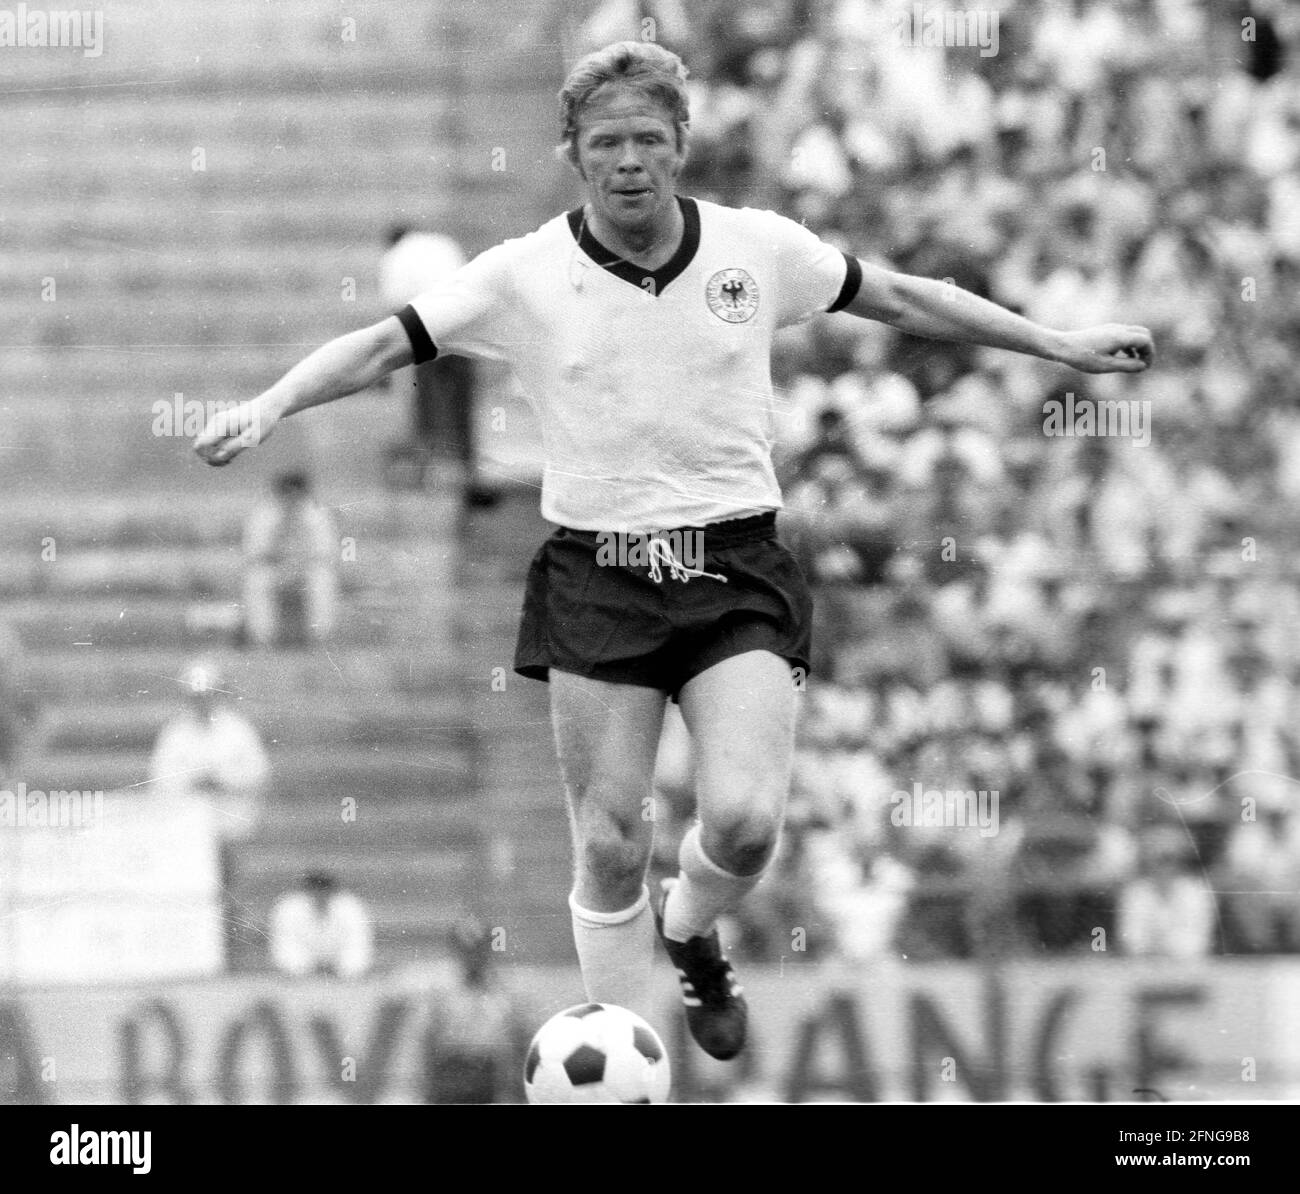 Copa Mundial 1970 en México: Alemania - Marruecos 2:1 / 03.06.1970 / Helmut Haller [traducción automática] Foto de stock